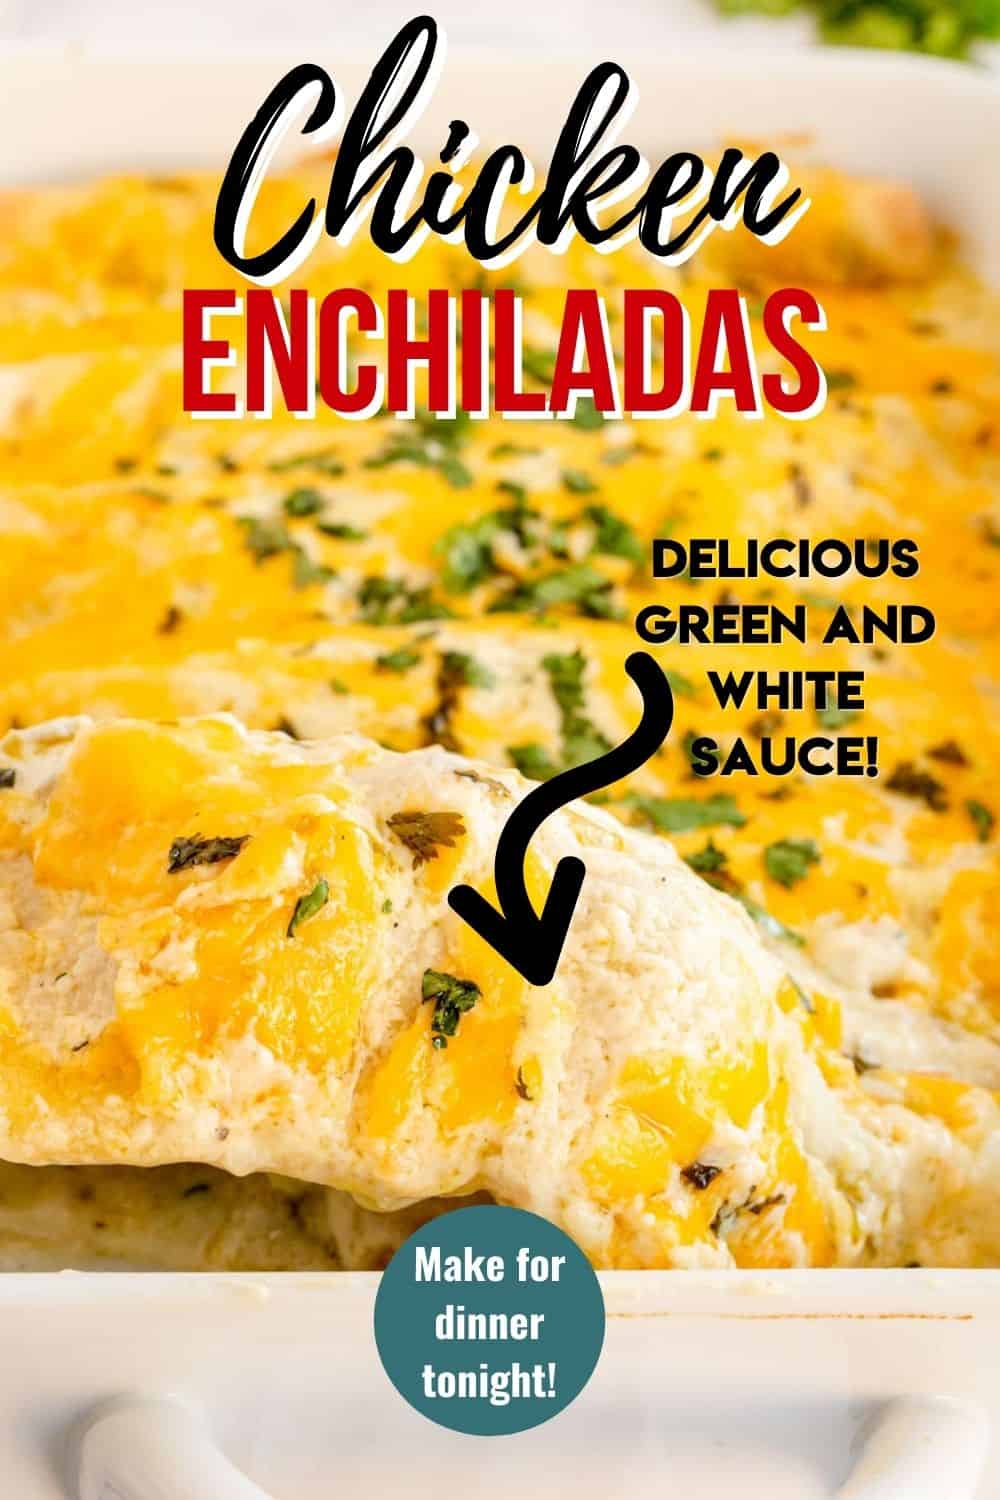 chicken enchiladas with text overlay